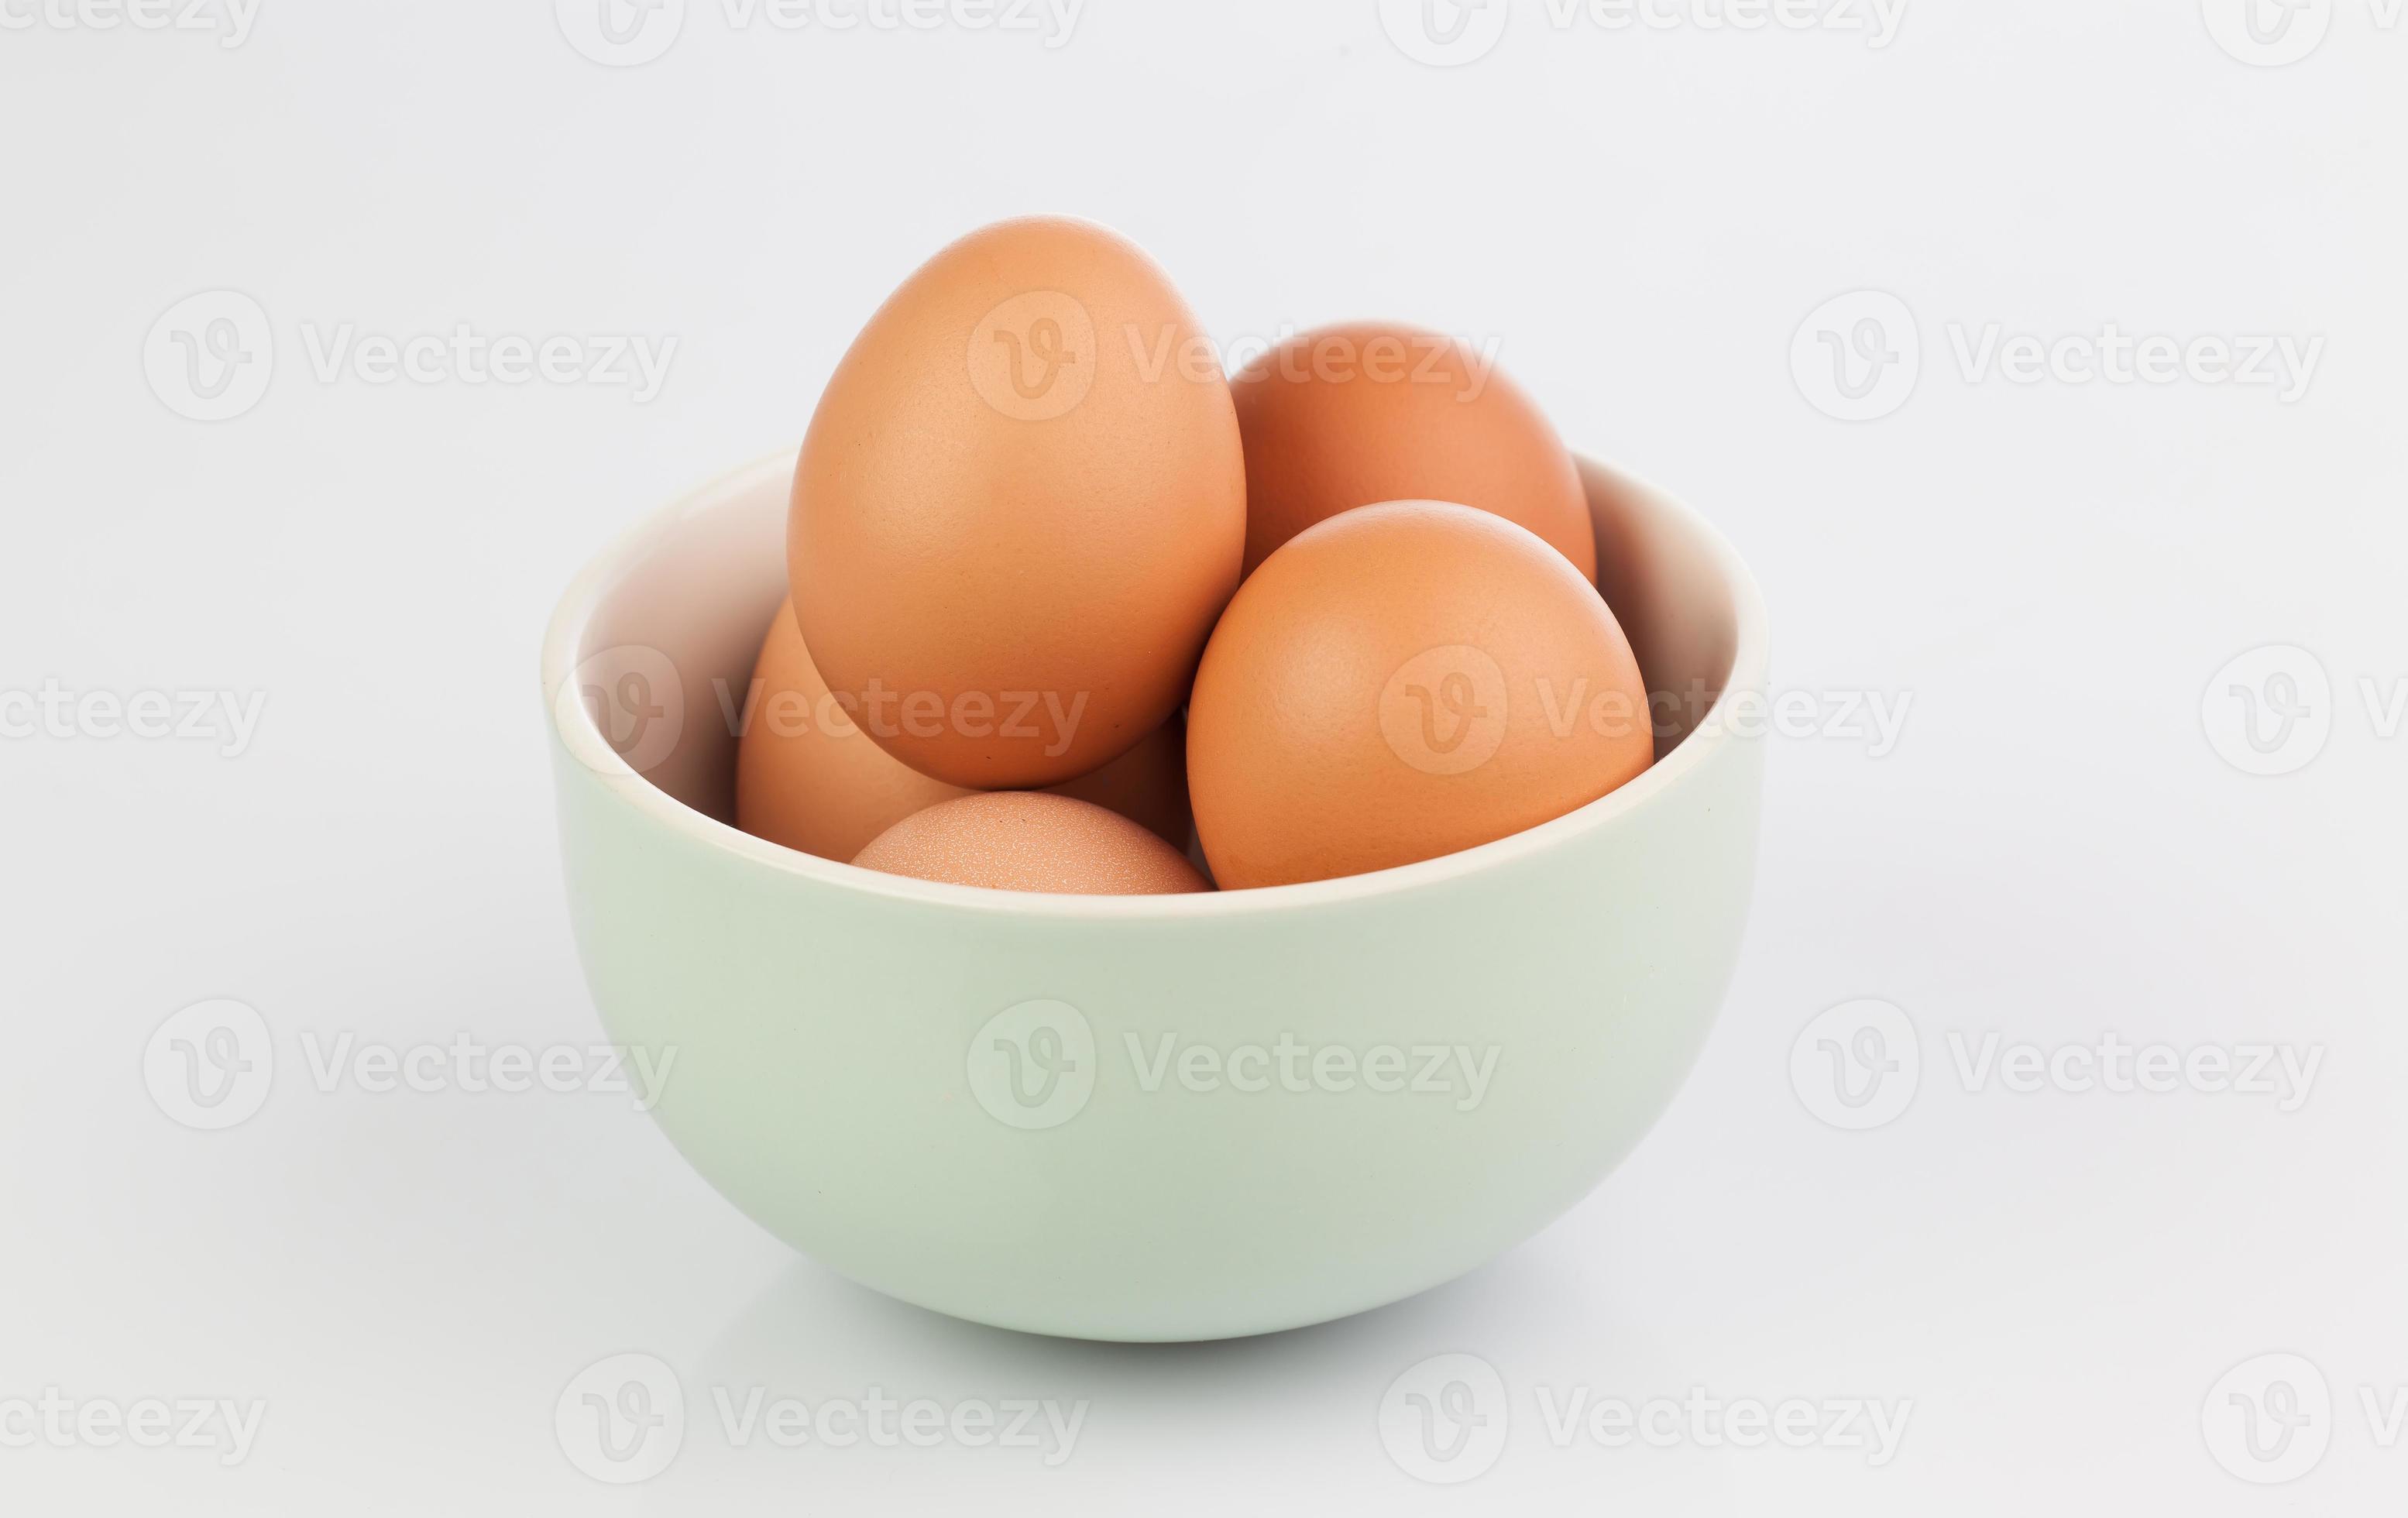 ovos crus isolados em tigela de barro foto